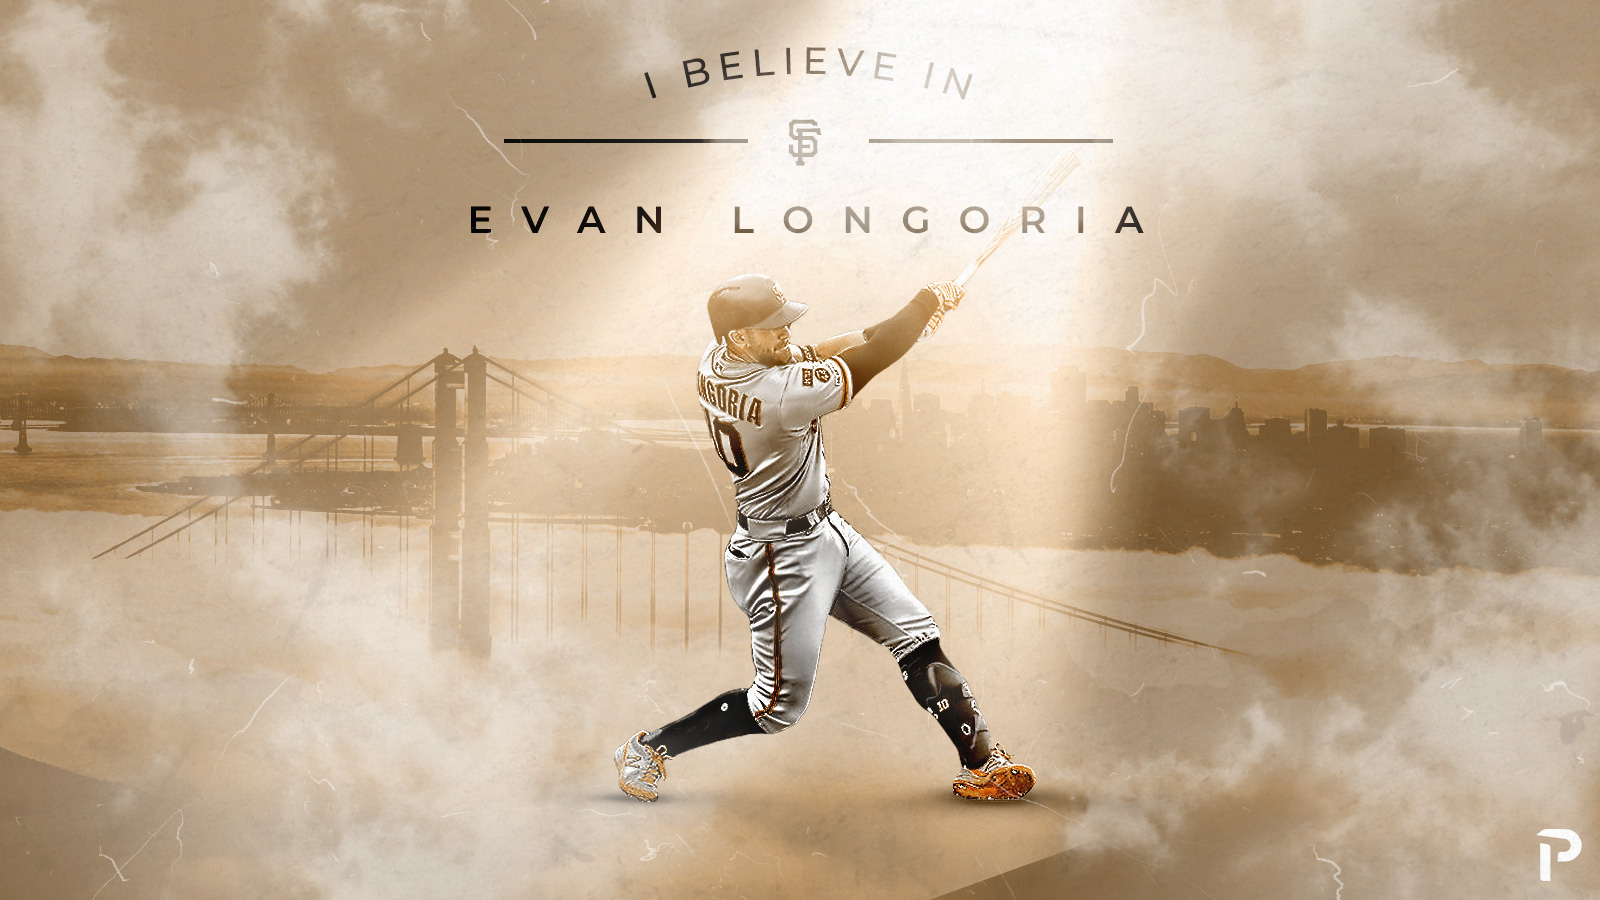 Evan Longoria's top moments